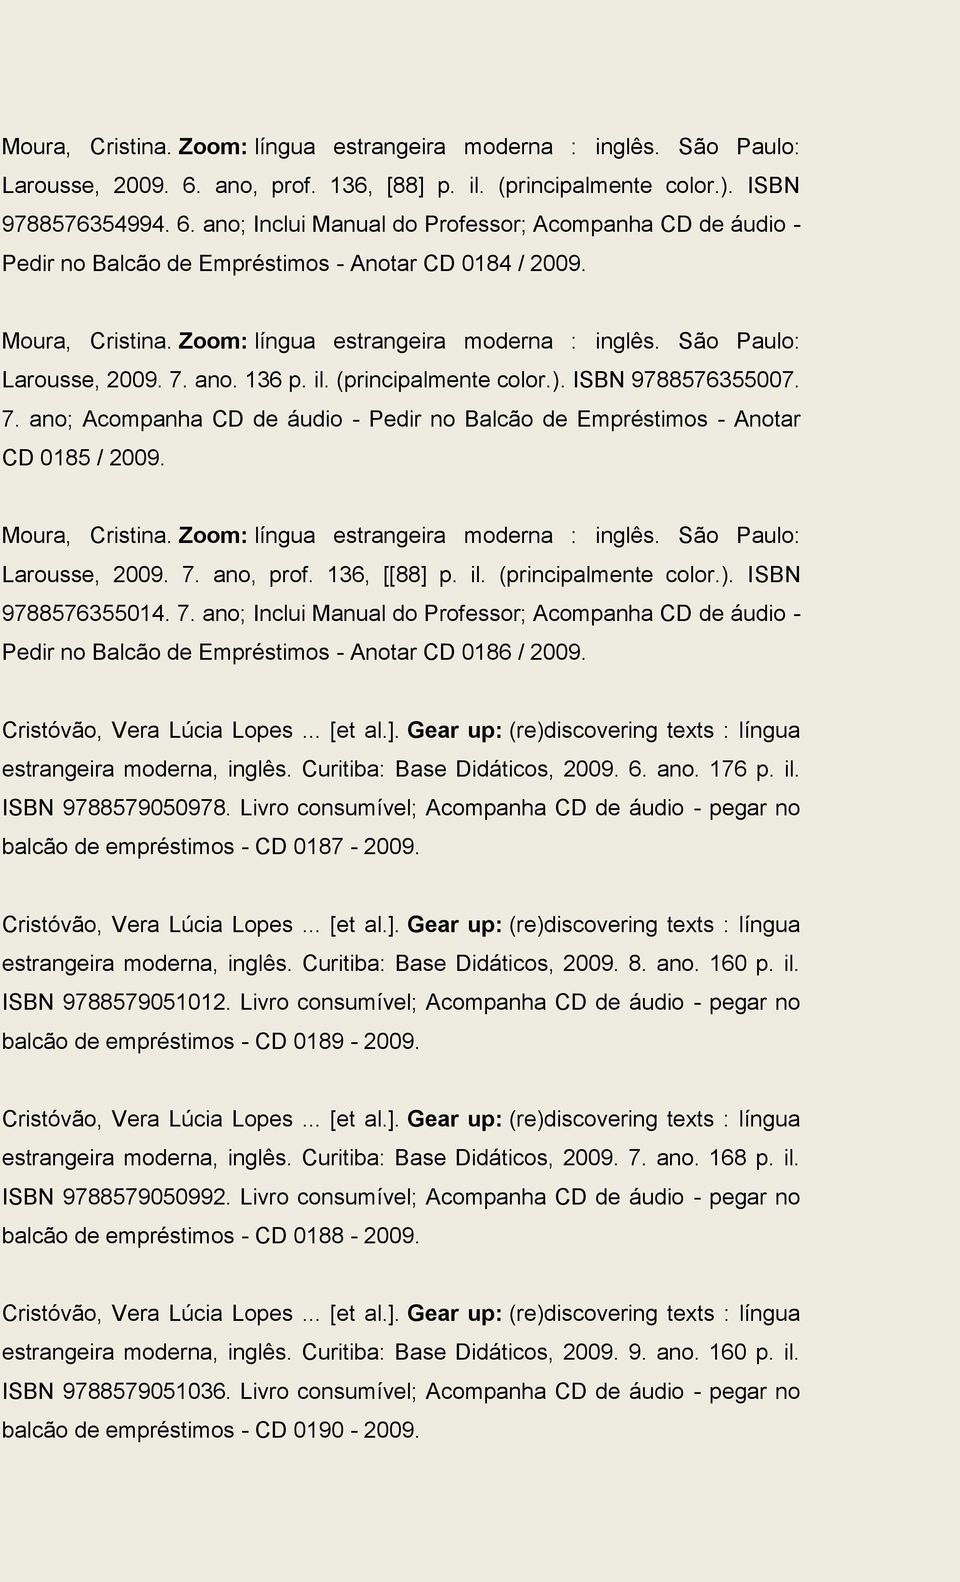 Moura, Cristina. Zoom: língua estrangeira moderna : inglês. São Paulo: Larousse, 2009. 7. ano. 136 p. il. (principalmente color.). ISBN 9788576355007. 7. ano; Acompanha CD de áudio - Pedir no Balcão de Empréstimos - Anotar CD 0185 / 2009.